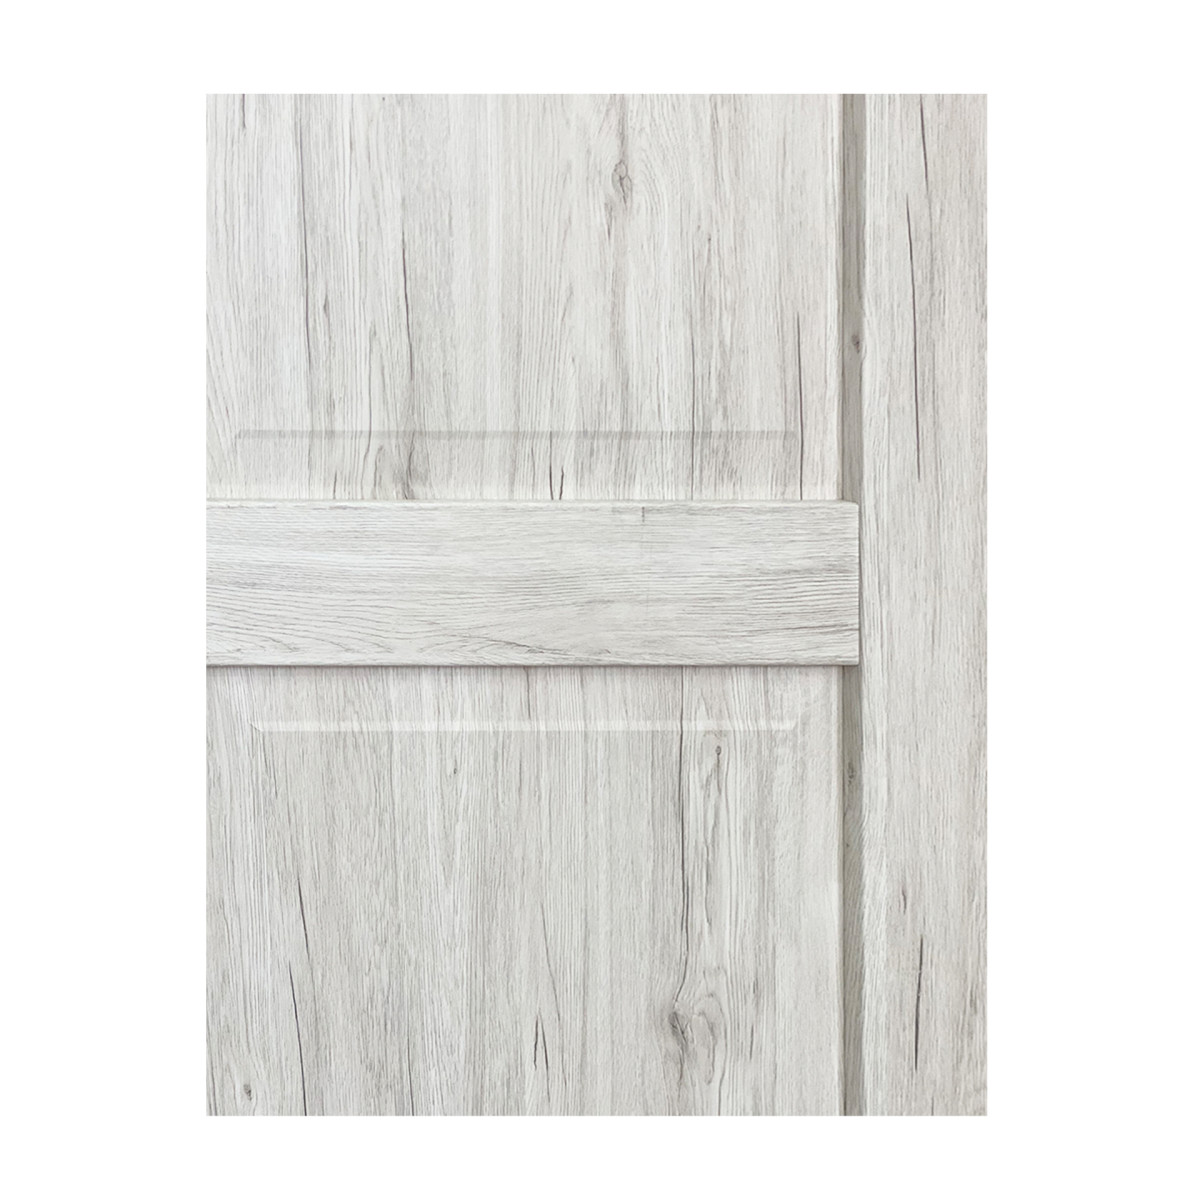 Дверь межкомнатная Амелия 70х200 см с фурнитурой, ПВХ, цвет рустик серый